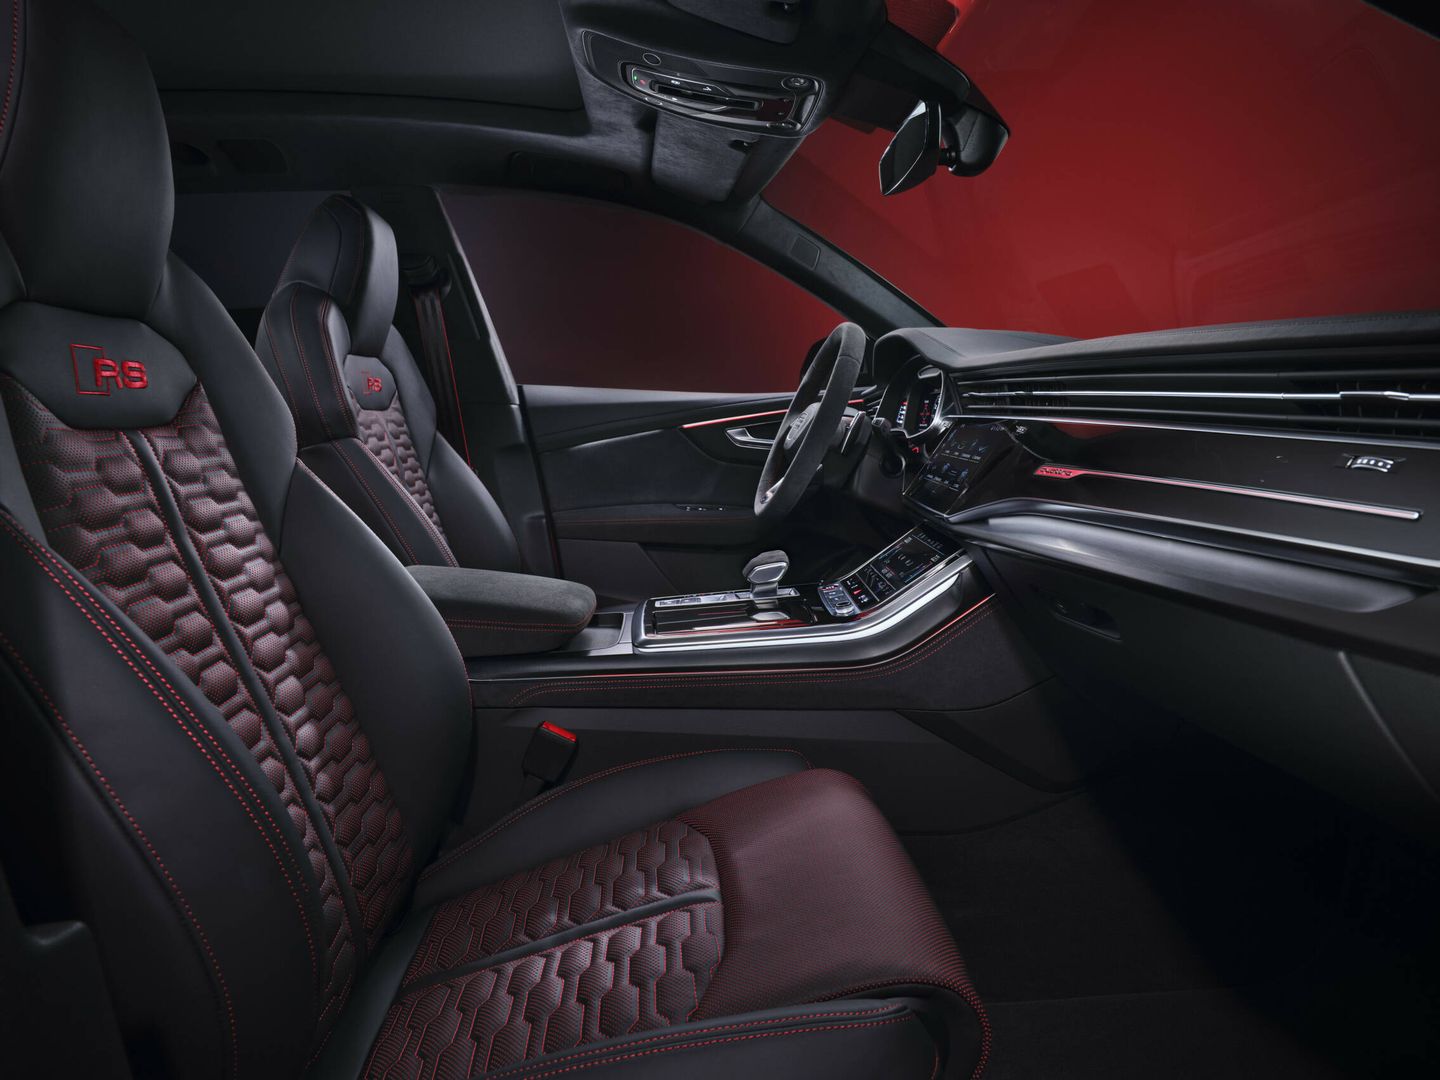 Los asientos deportivos lucen el logo RS y cuentan con ventilación específica de serie.